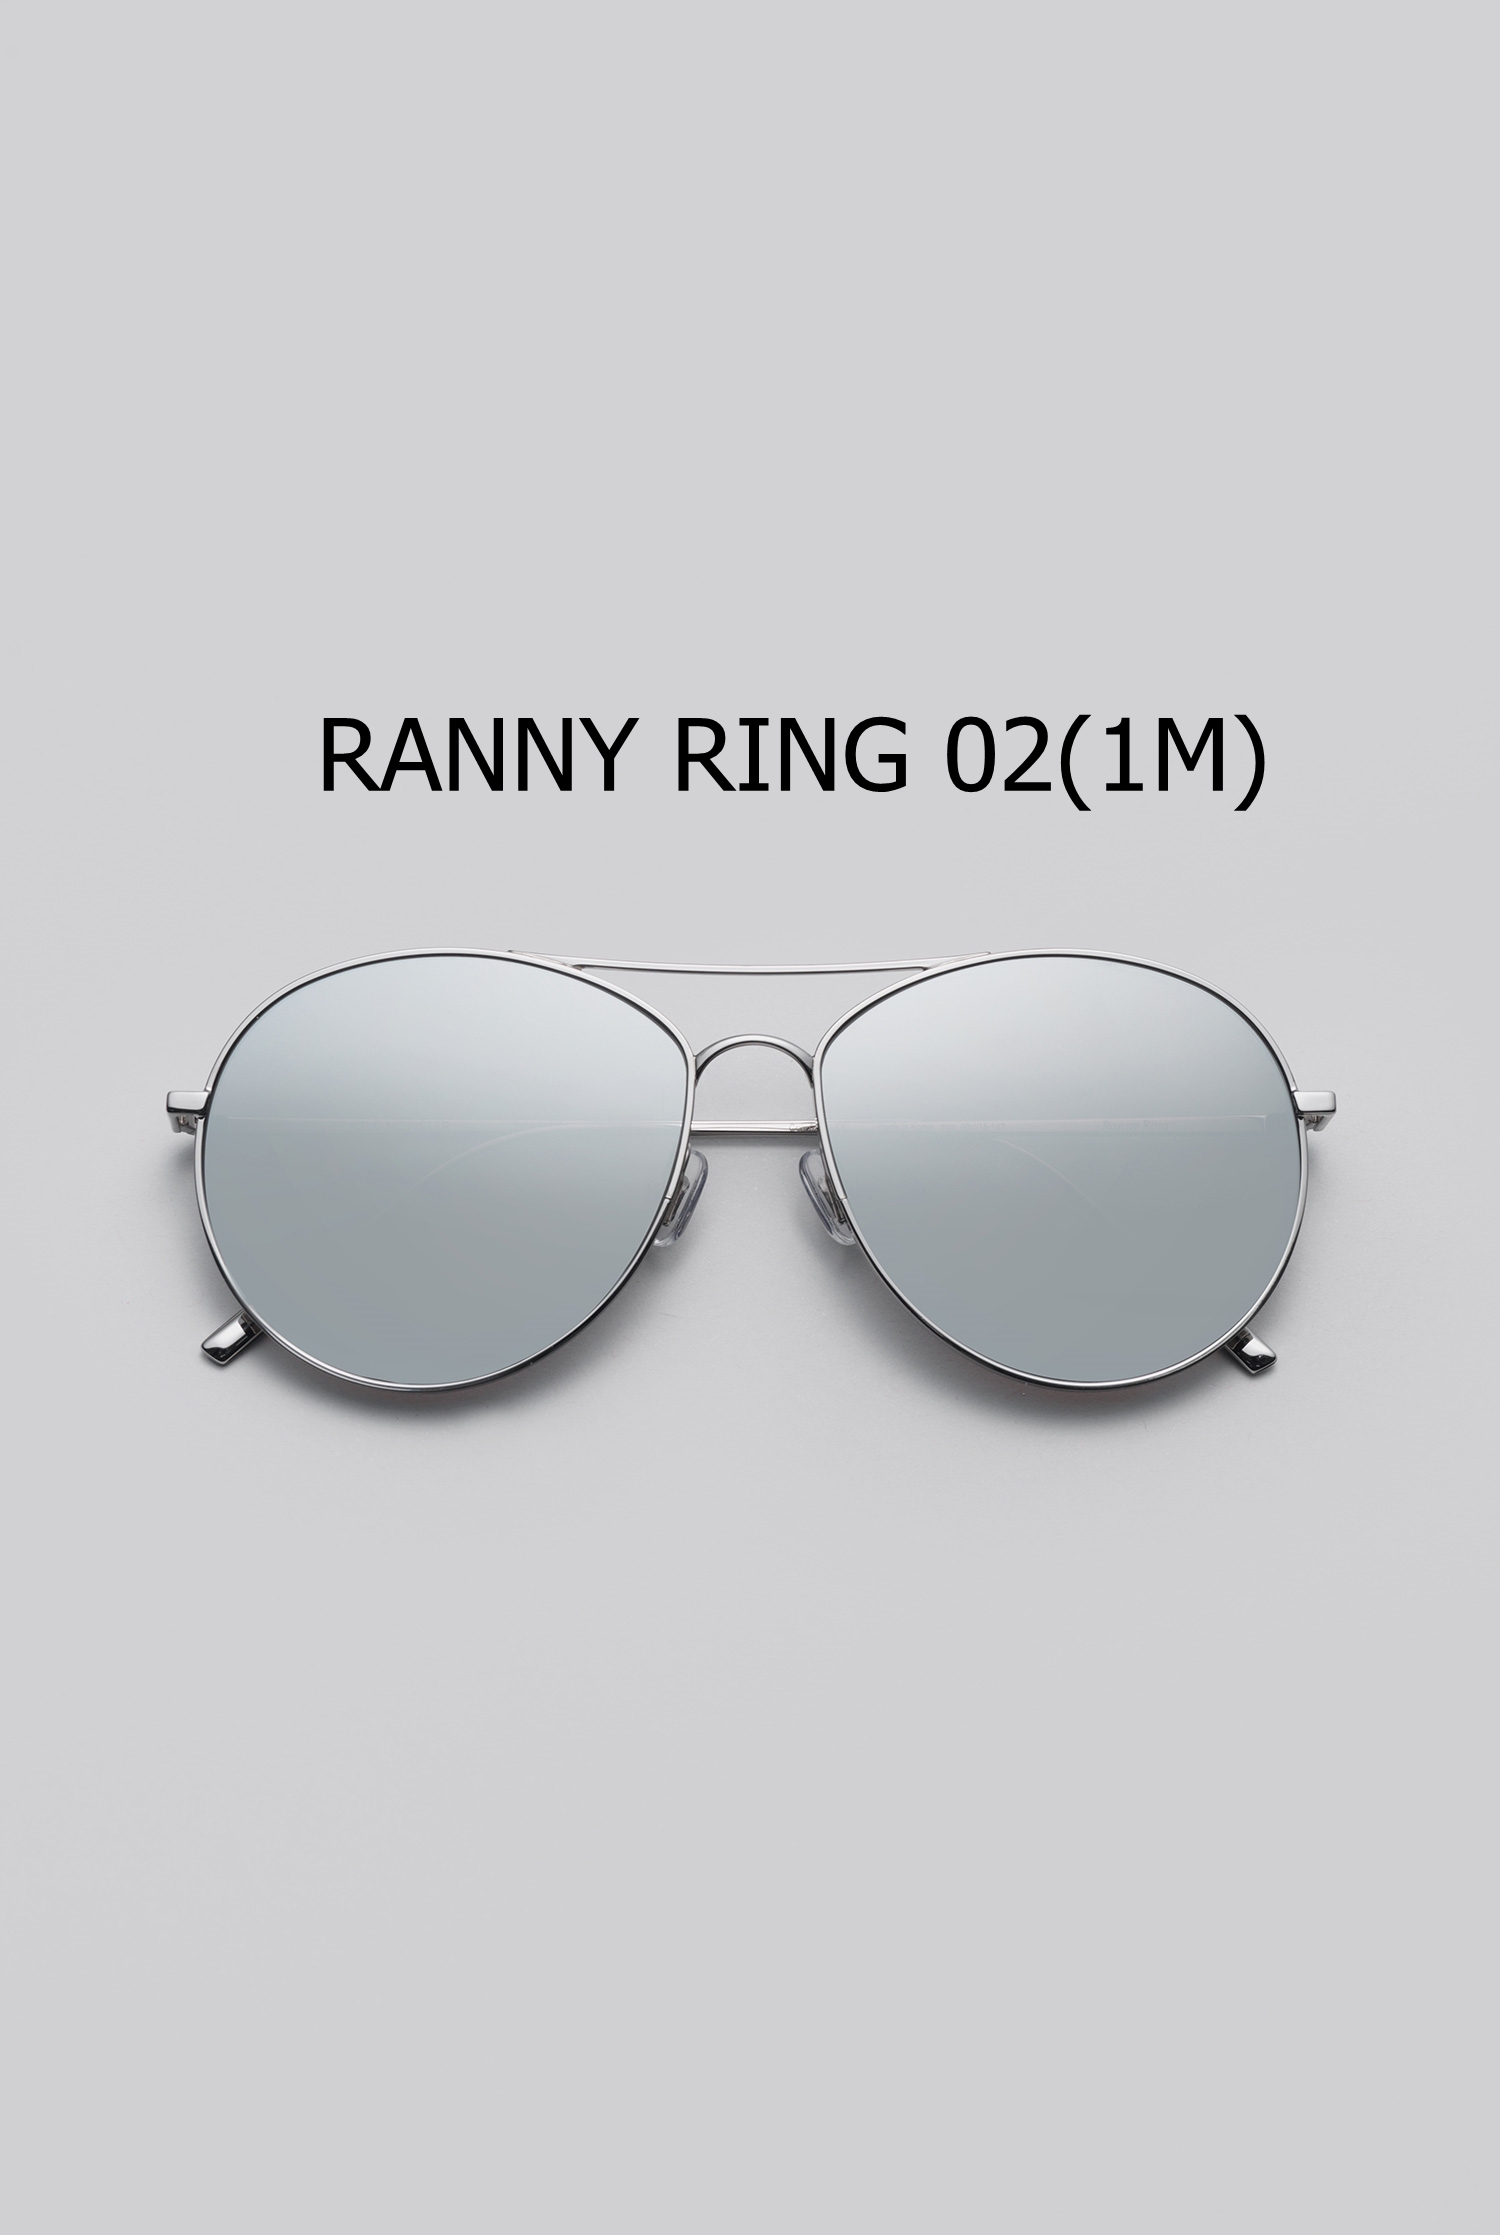 RANNY RING 02(1M) 